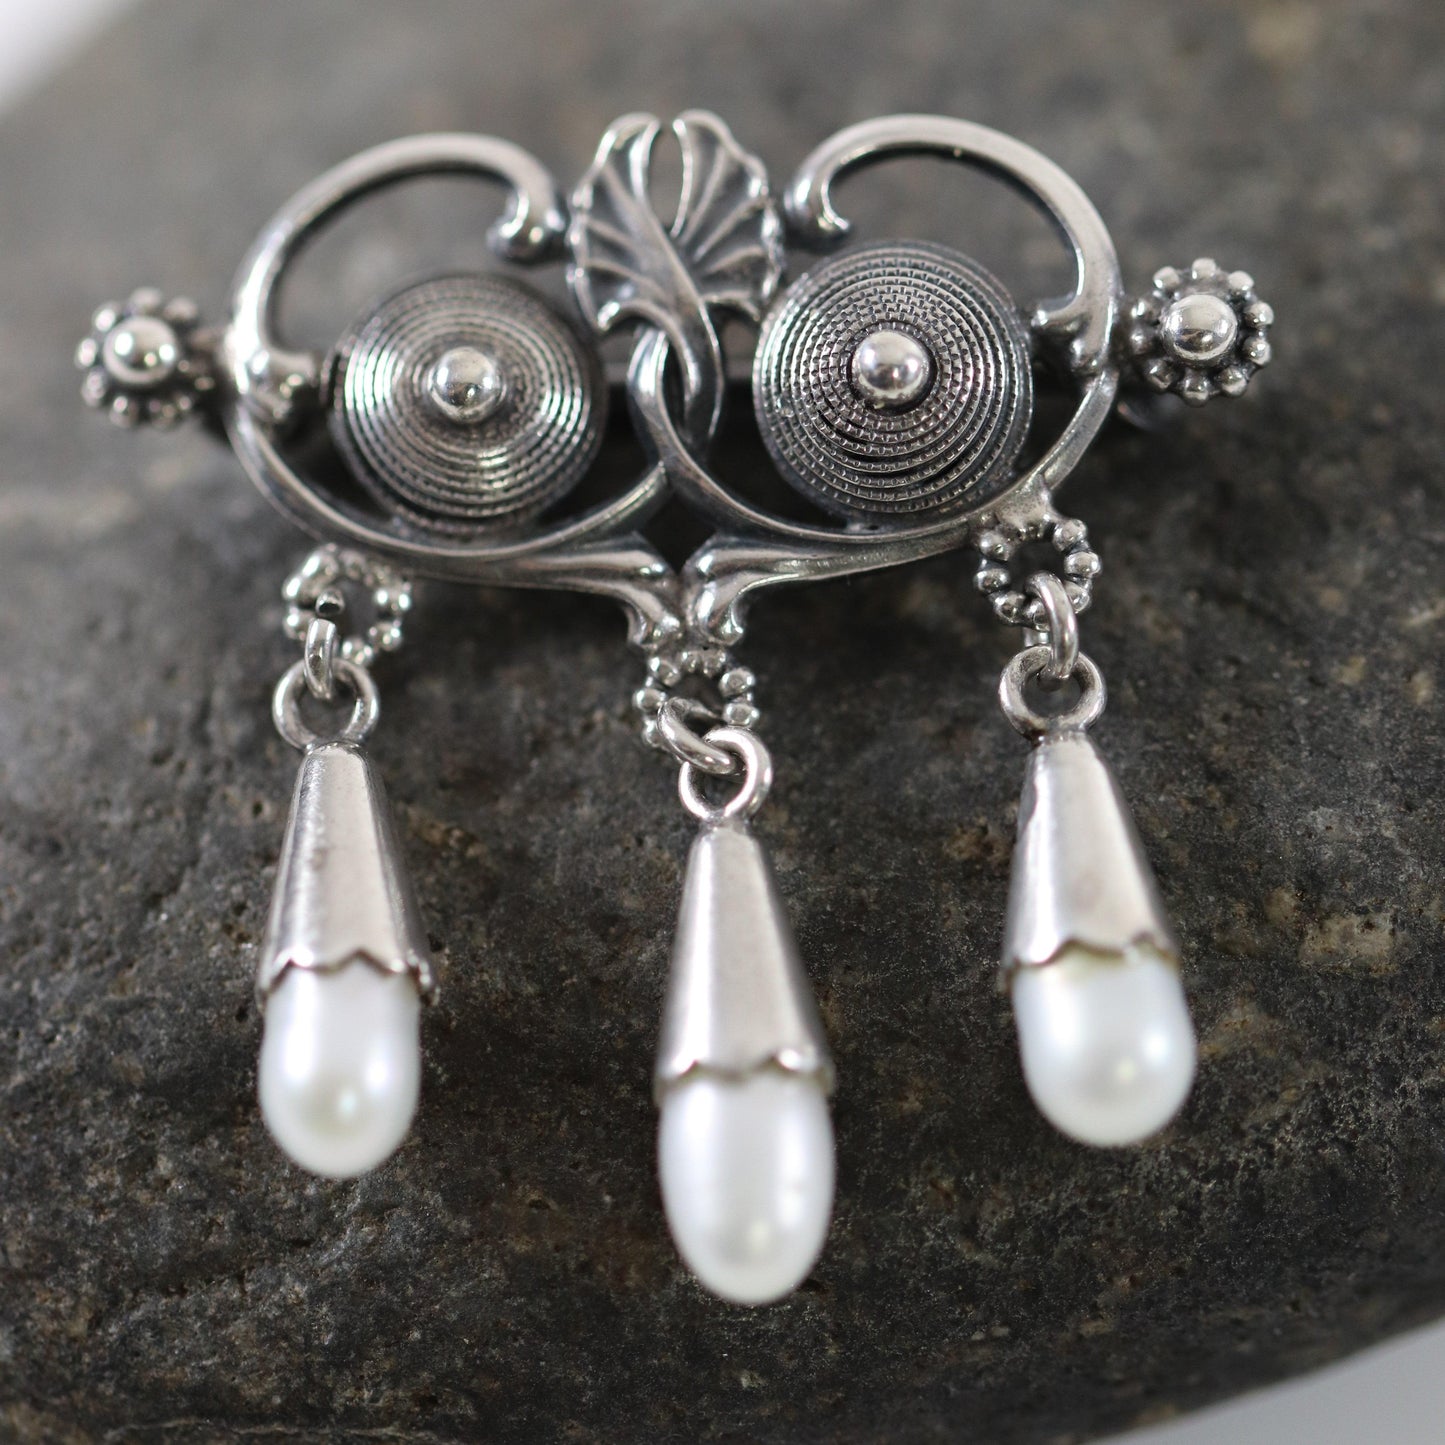 Vintage Silver Jewelry | Art Nouveau Seed Pearl Brooch - Carmel Fine Silver Jewelry